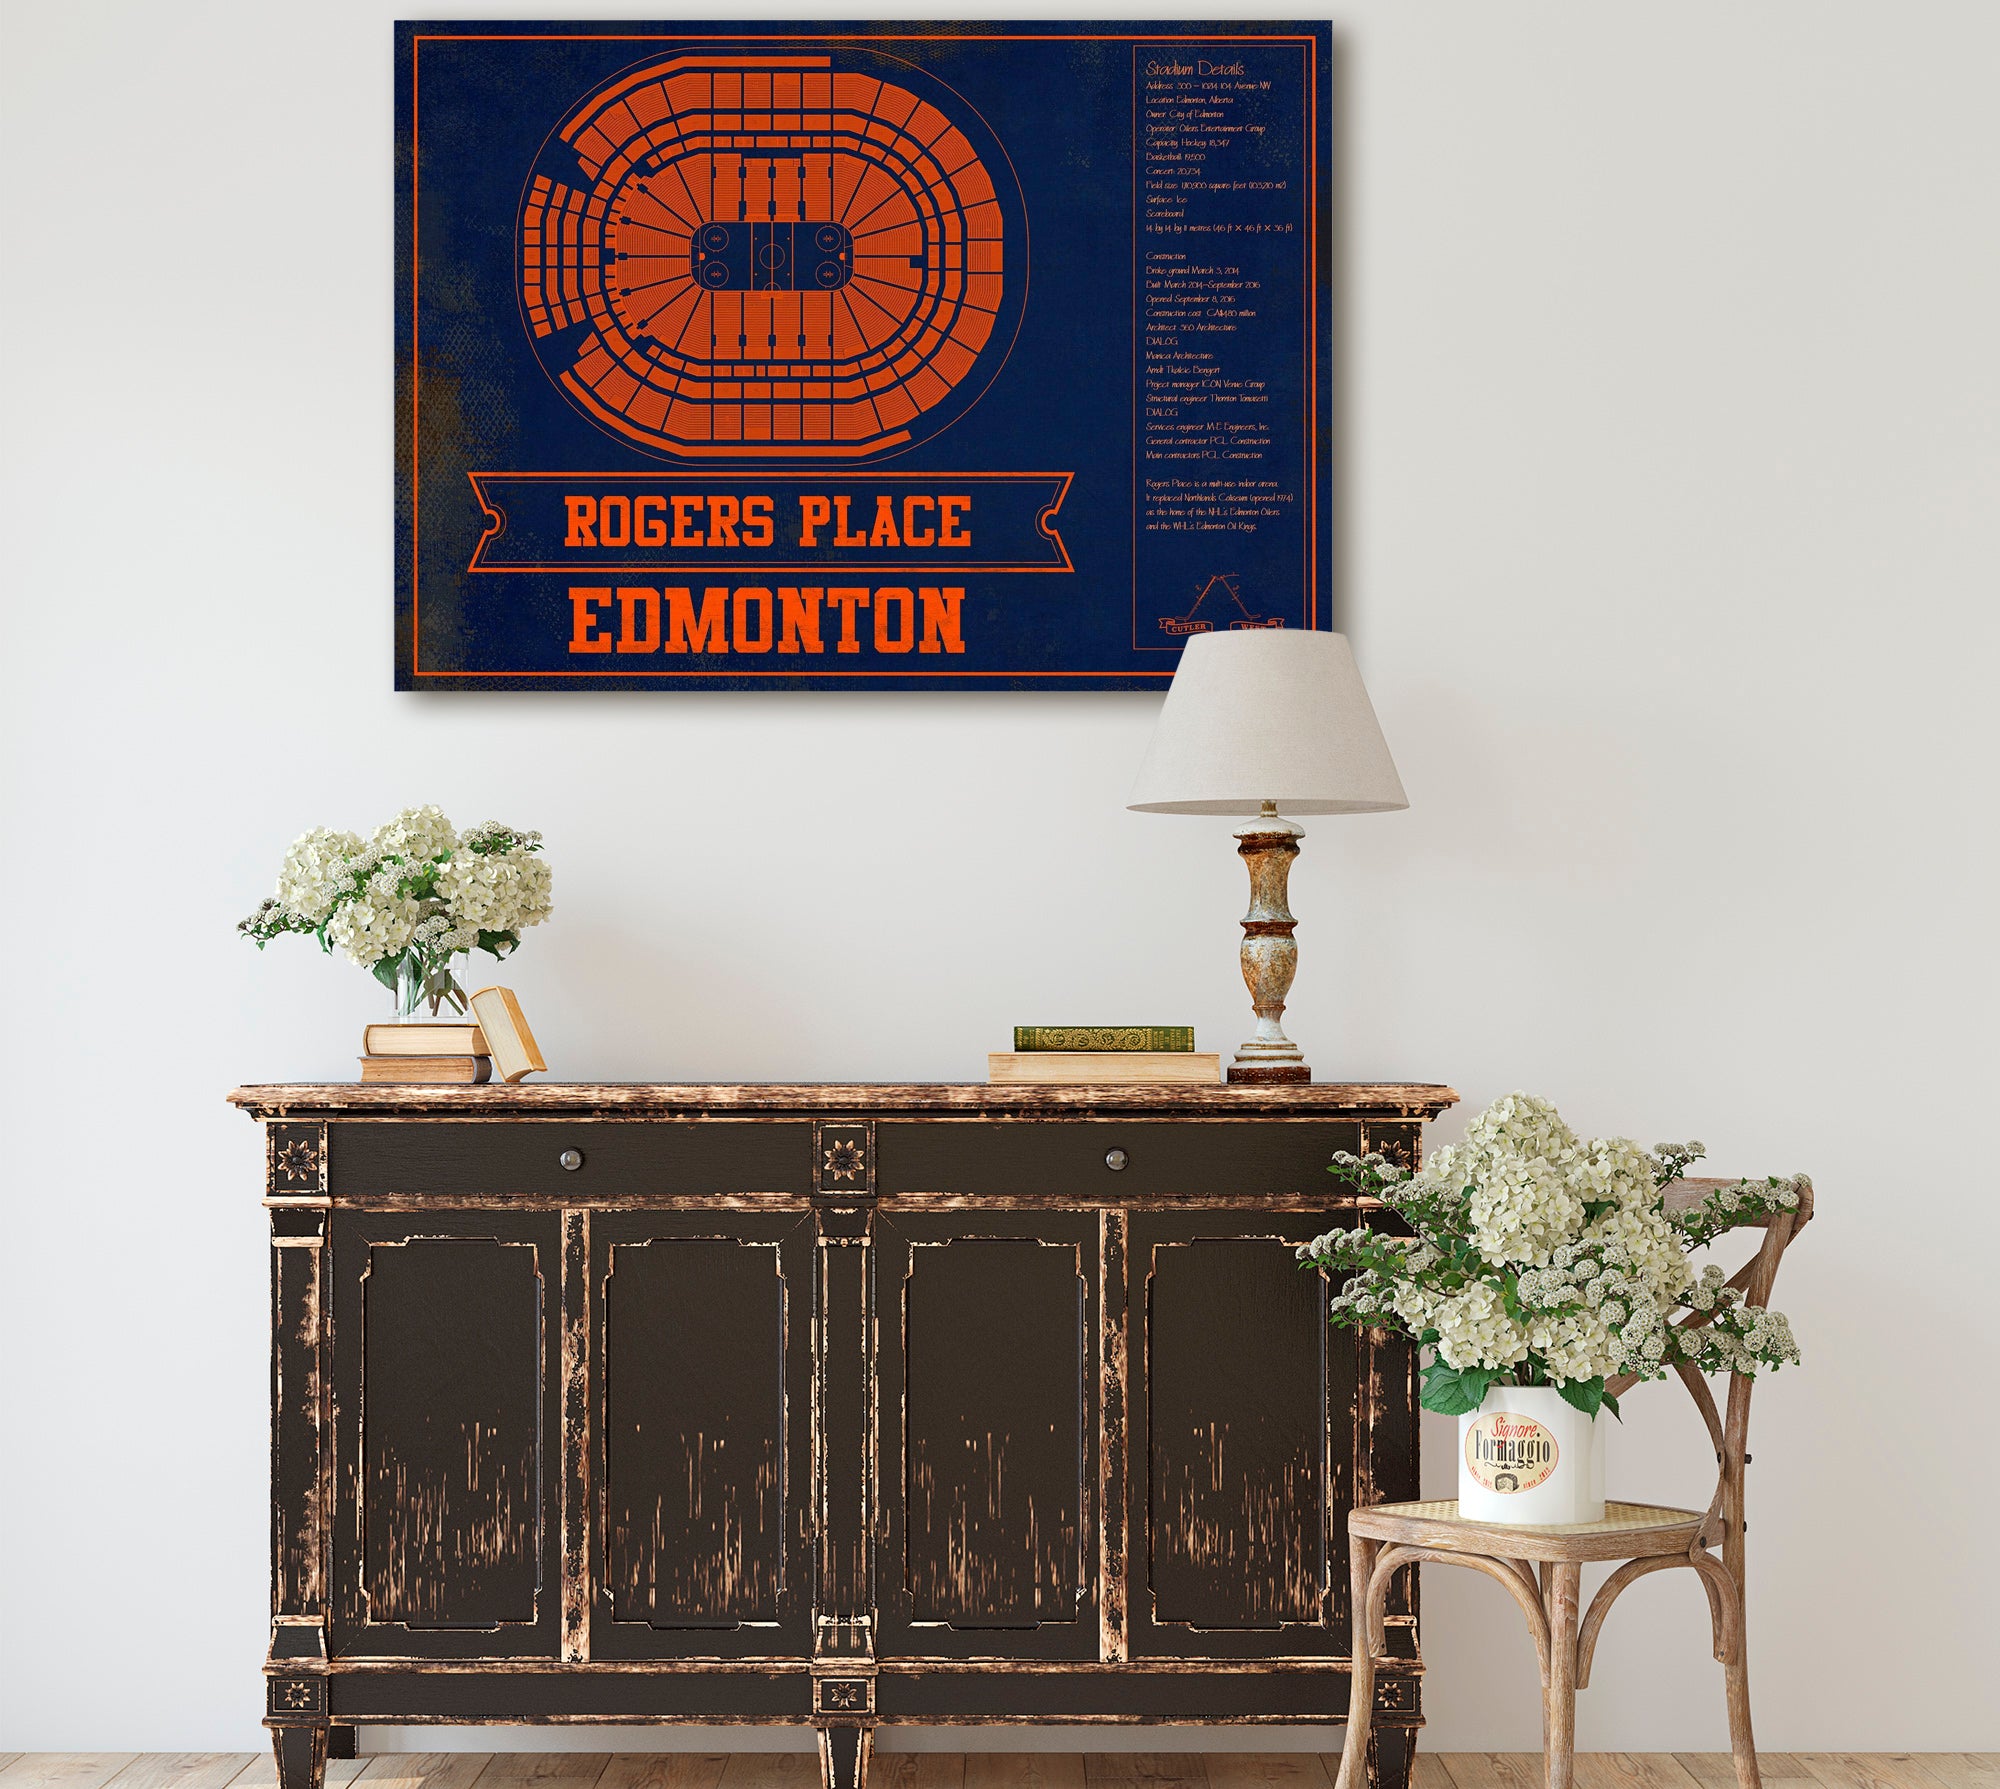 Edmonton Oilers Team Colors - Rogers Place Vintage Hockey Blueprint NHL Print